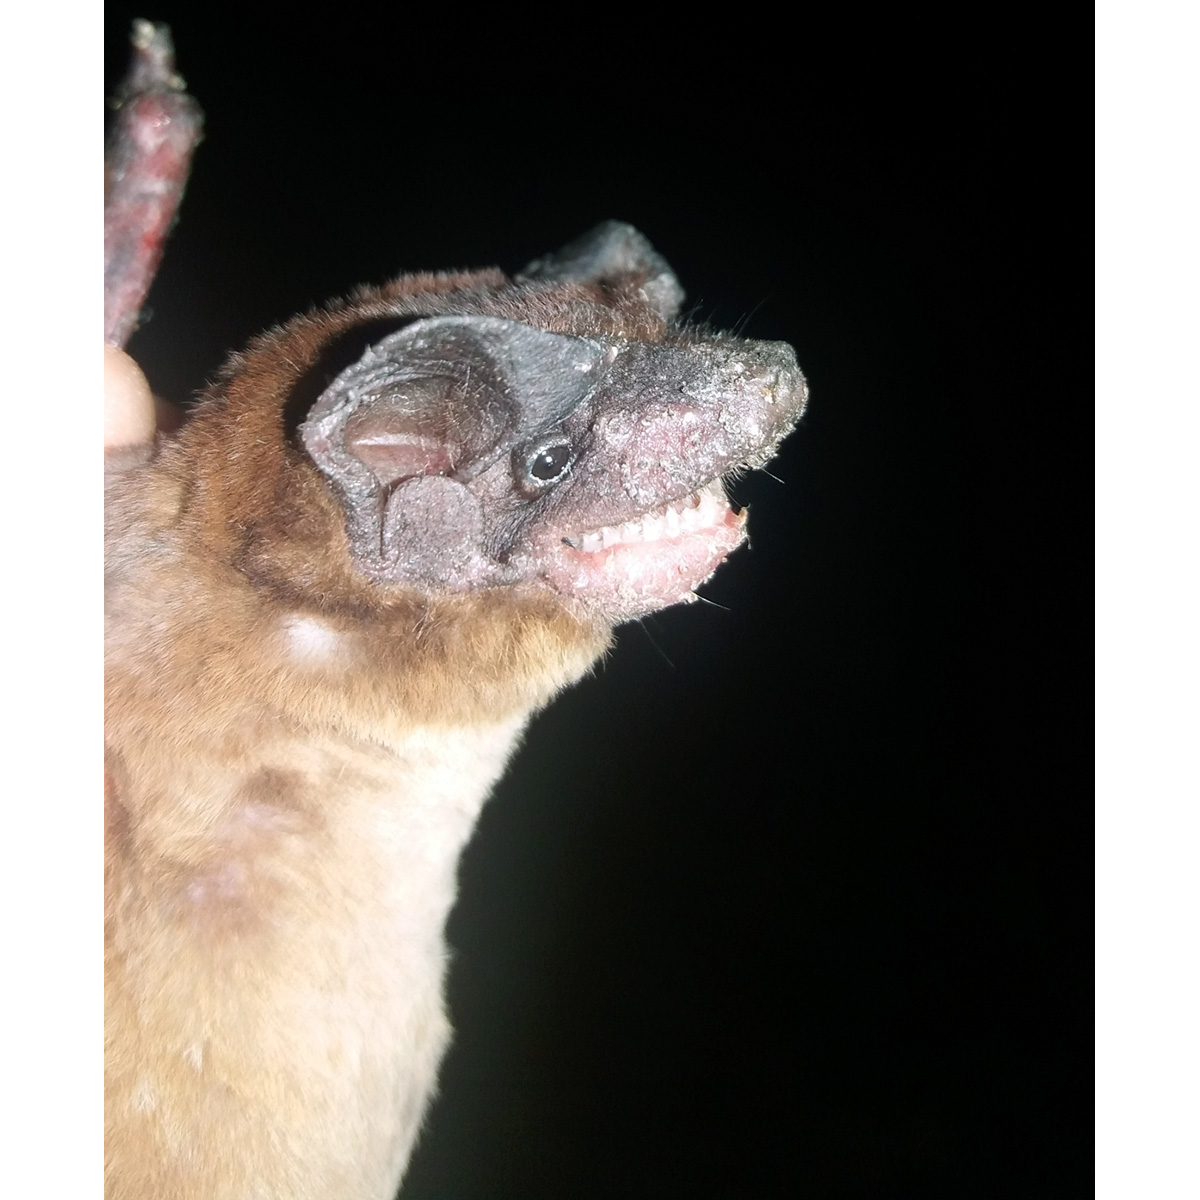 Mexican Dog-Faced Bat (Cynomops mexicanus) Фото №8